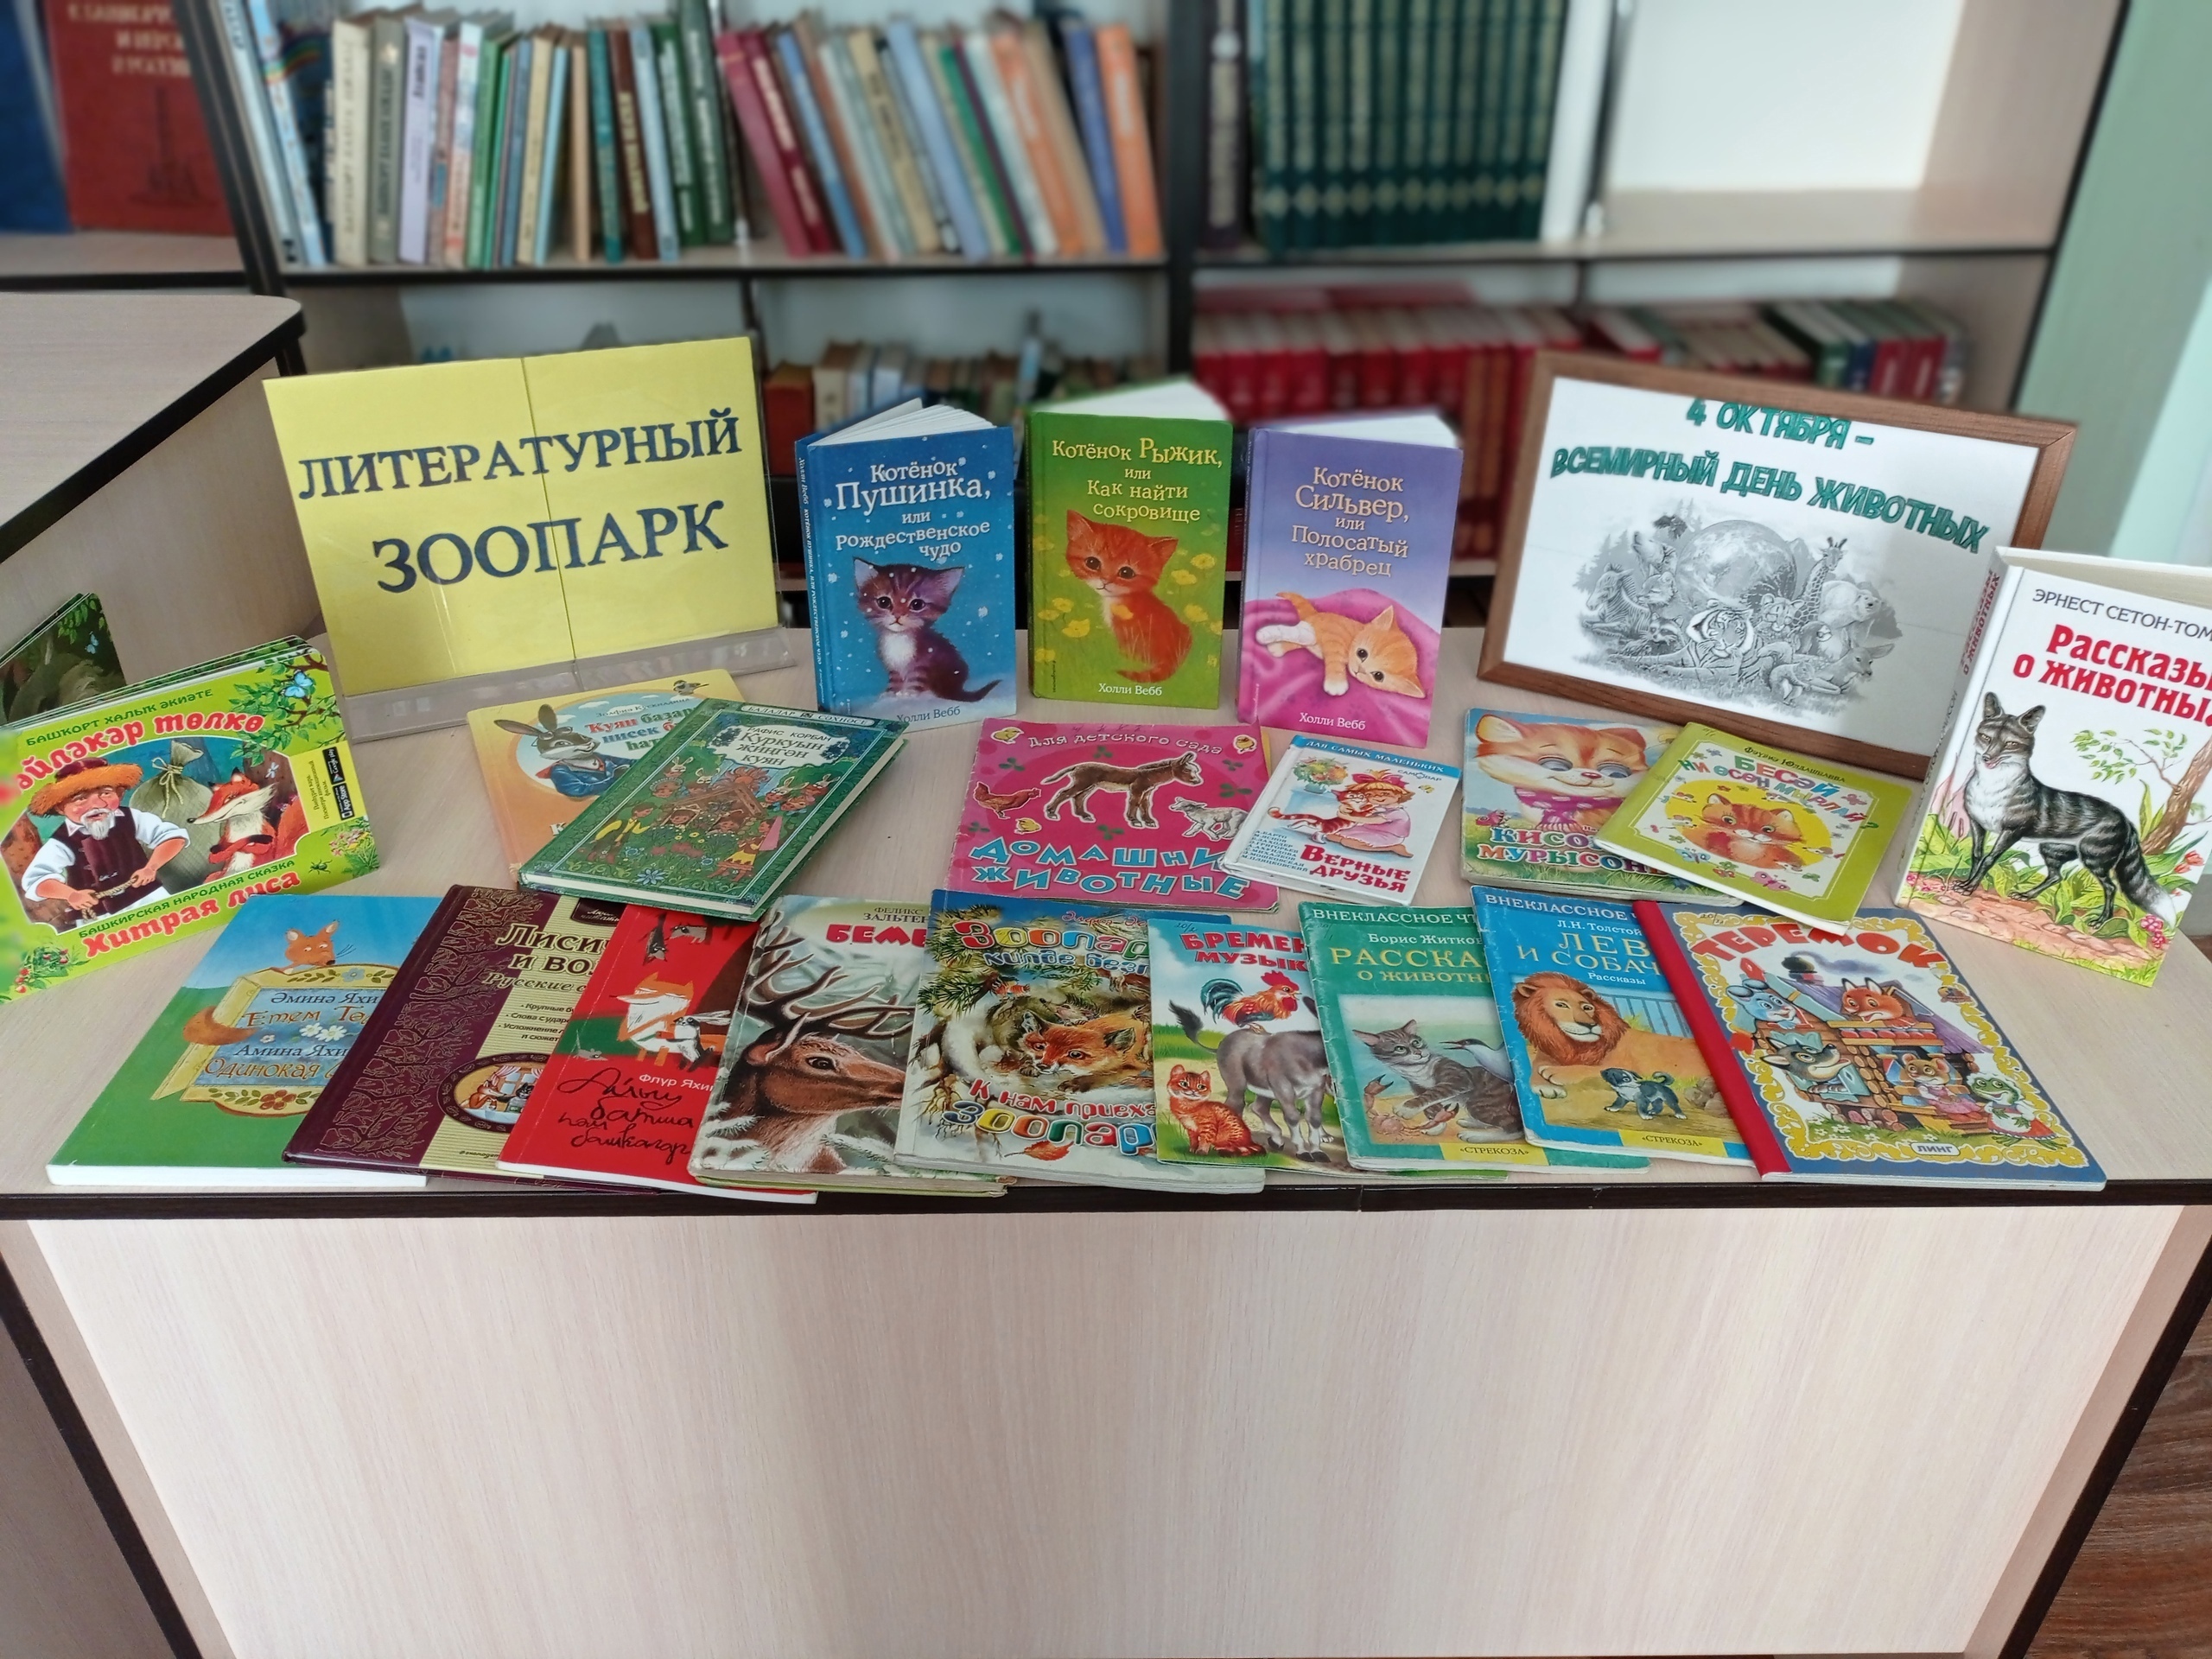 В Тошкуровской сельской библиотеке отметили День защиты животных